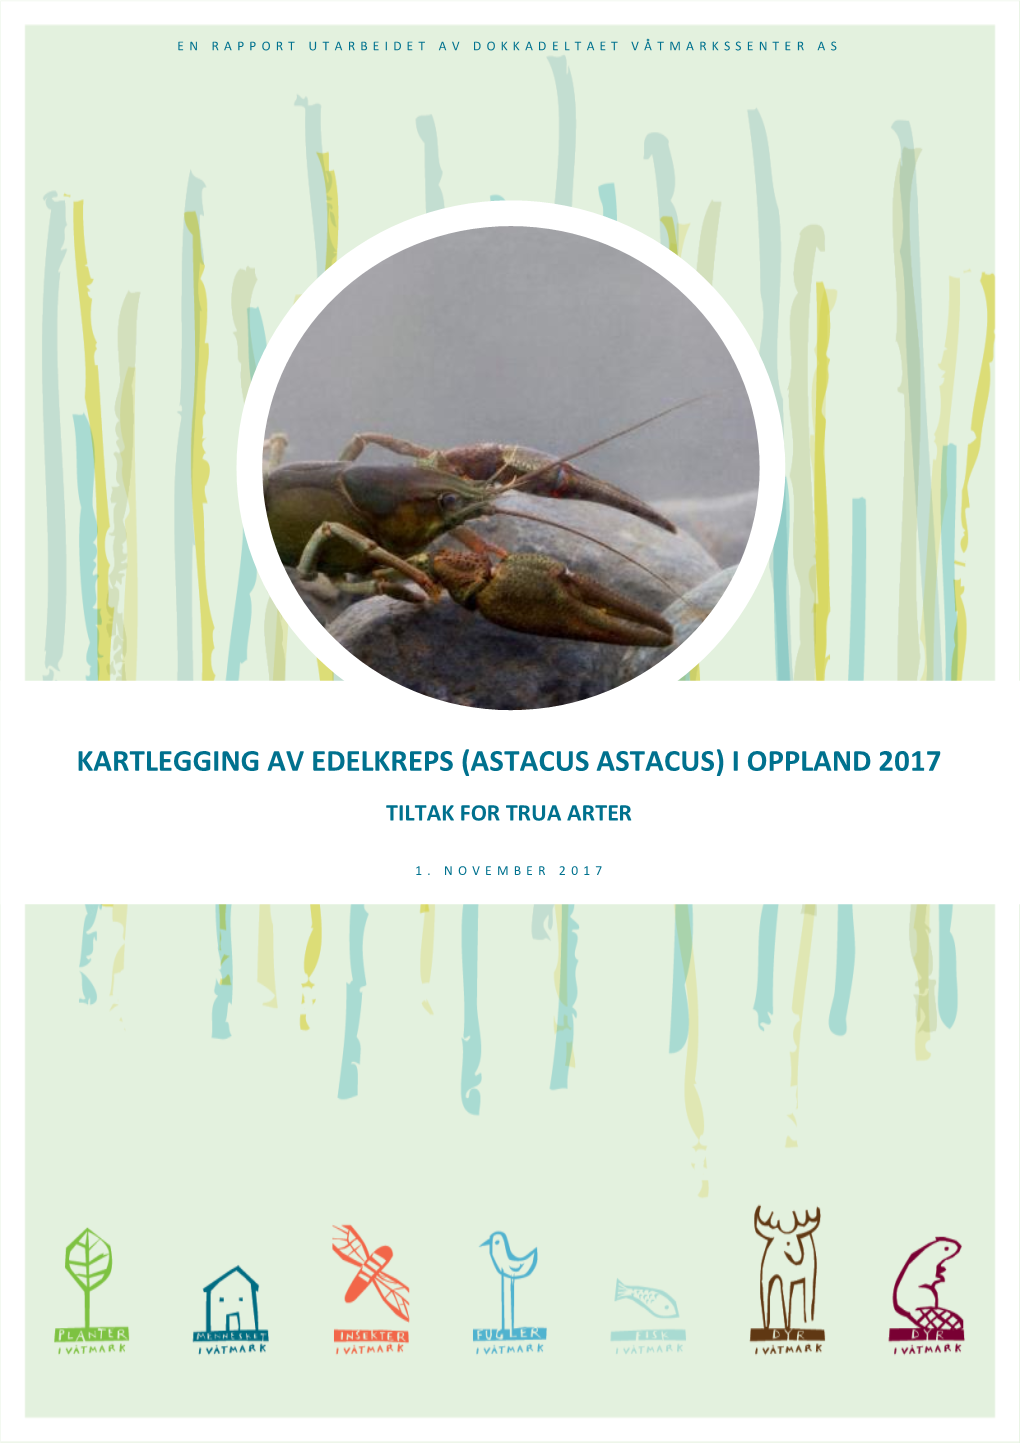 Kartlegging Av Edelkreps (Astacus Astacus) I Oppland 2017 Tiltak for Trua Arter